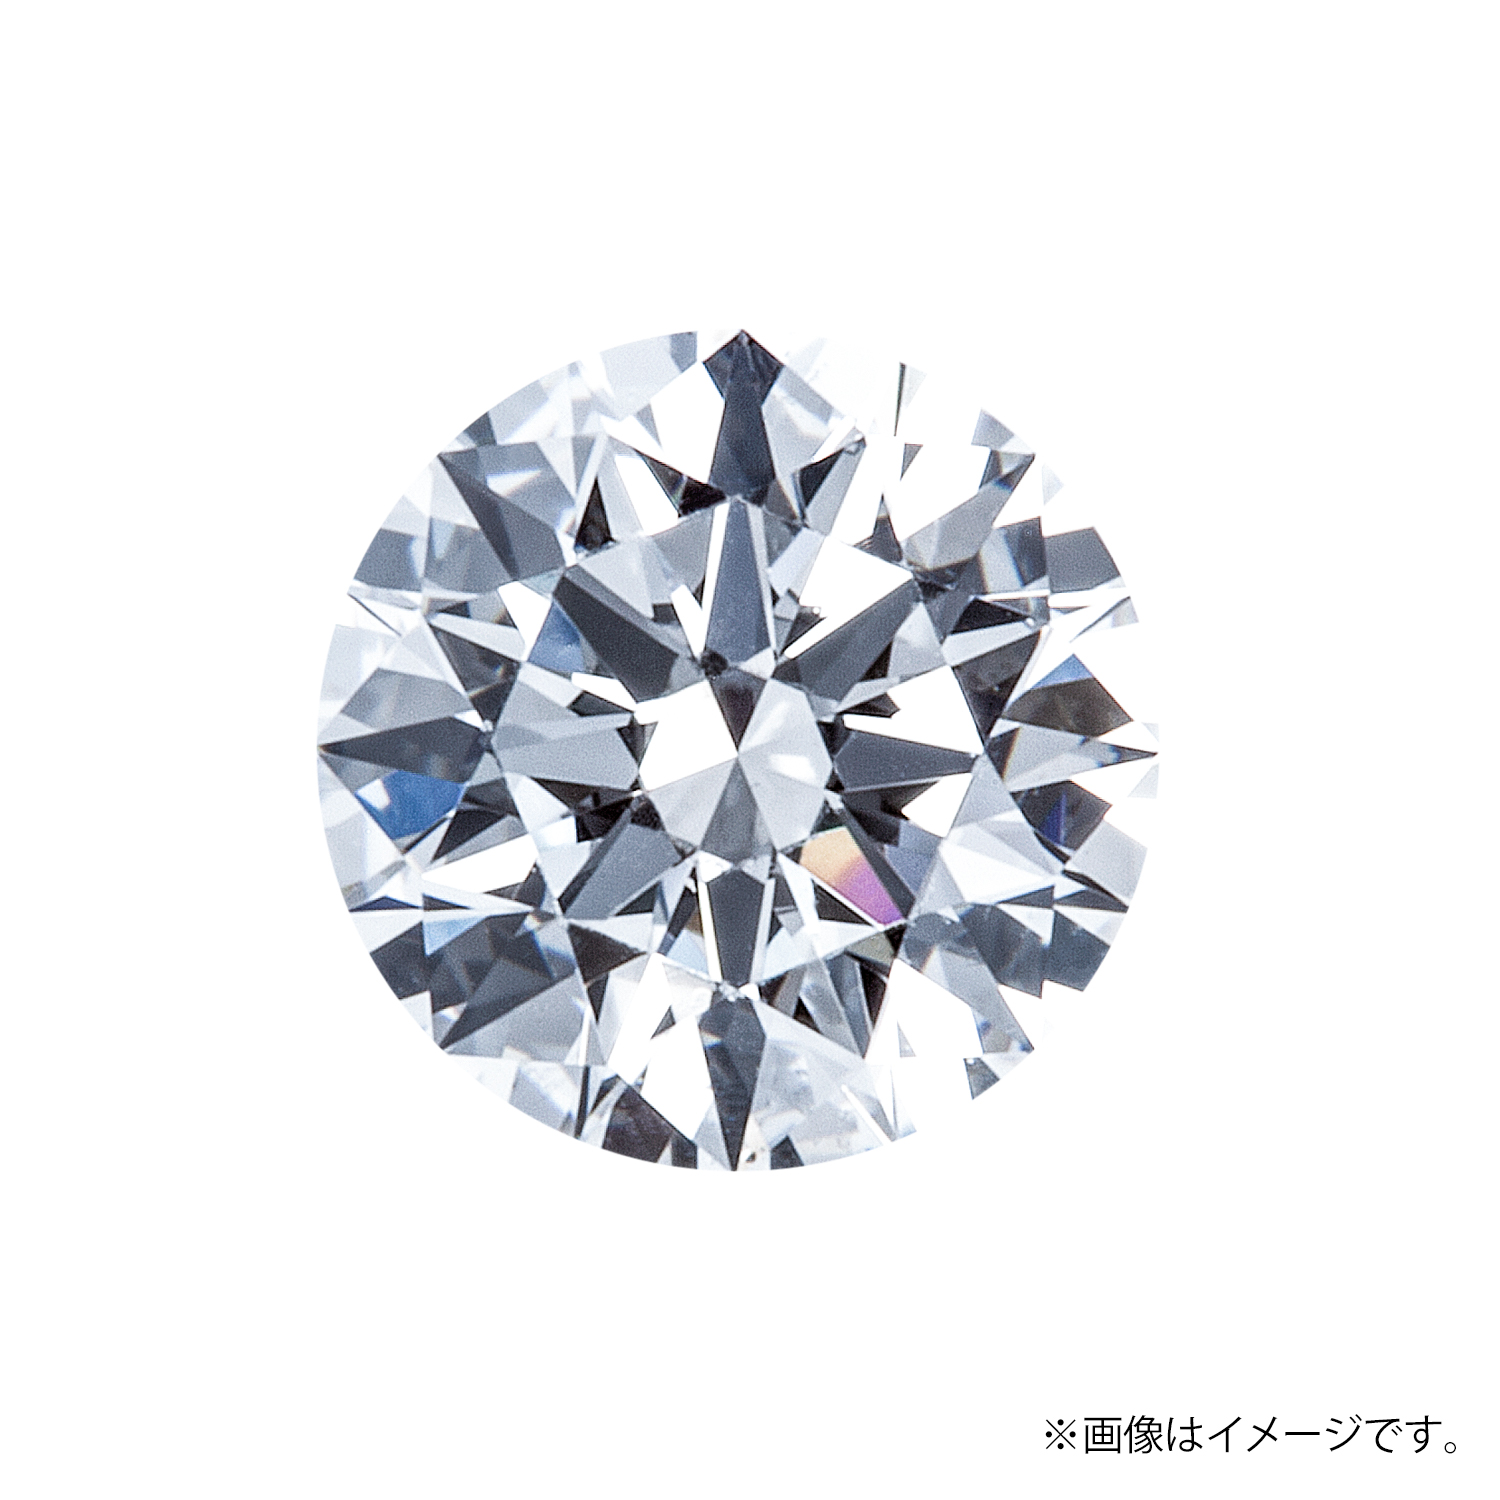 0.235ct Round ダイヤモンド / F / SI1 / 3EX